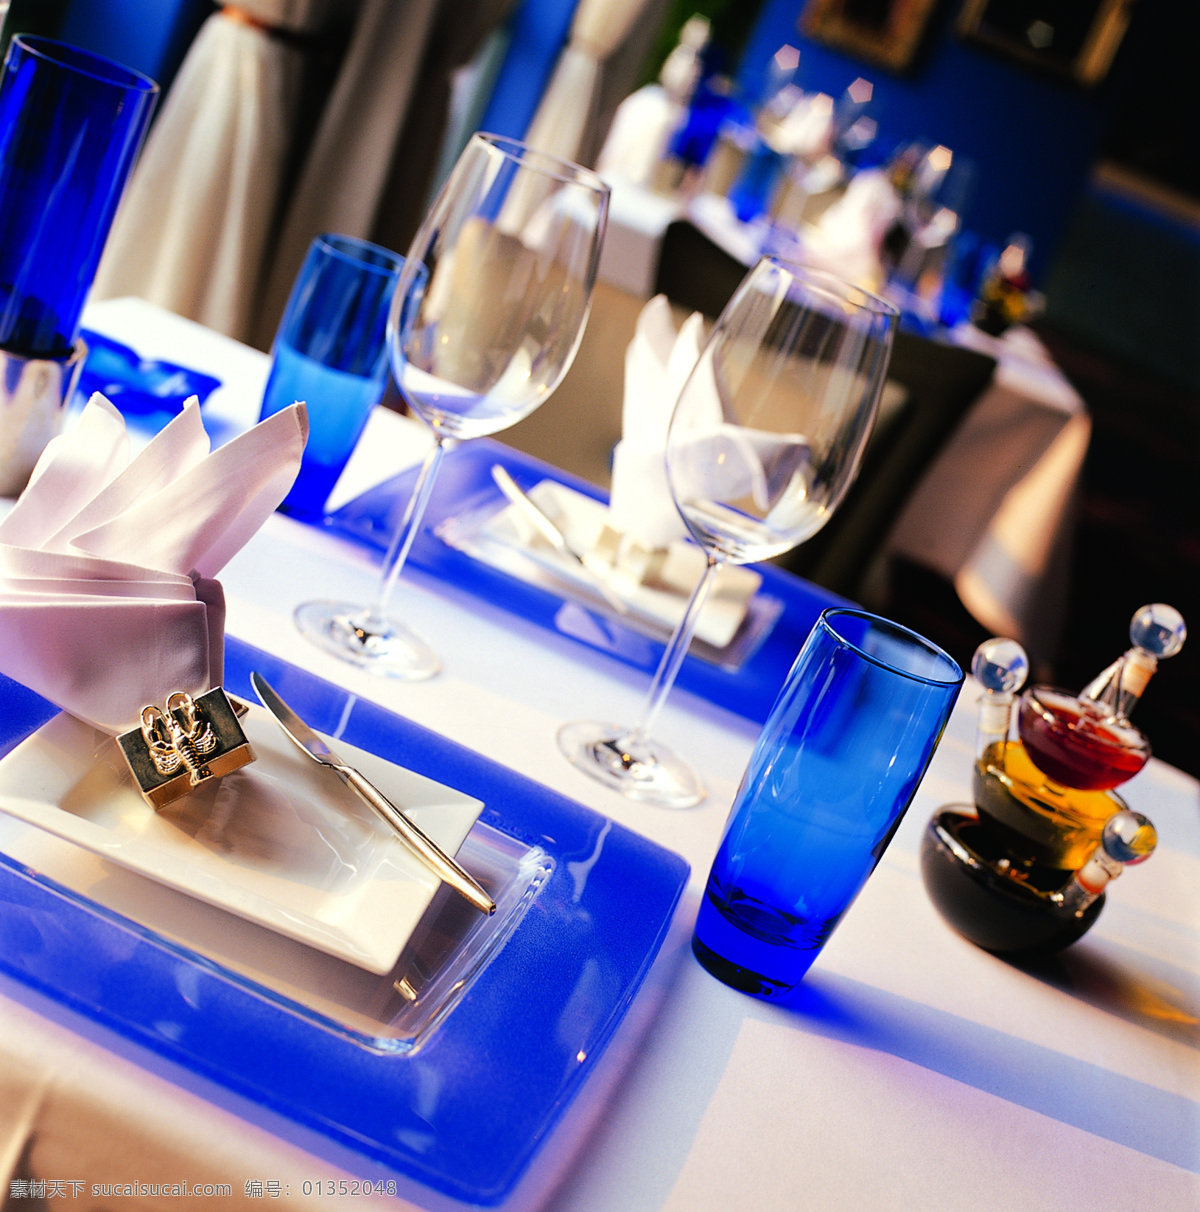 餐厅 高档餐厅 高雅 建筑园林 酒瓶 蓝色梦幻 摄影图库 意大利 意大利餐厅 用餐餐厅 水晶杯 桌布桌椅 碗筷 室内摄影 室内设计 家居装饰素材